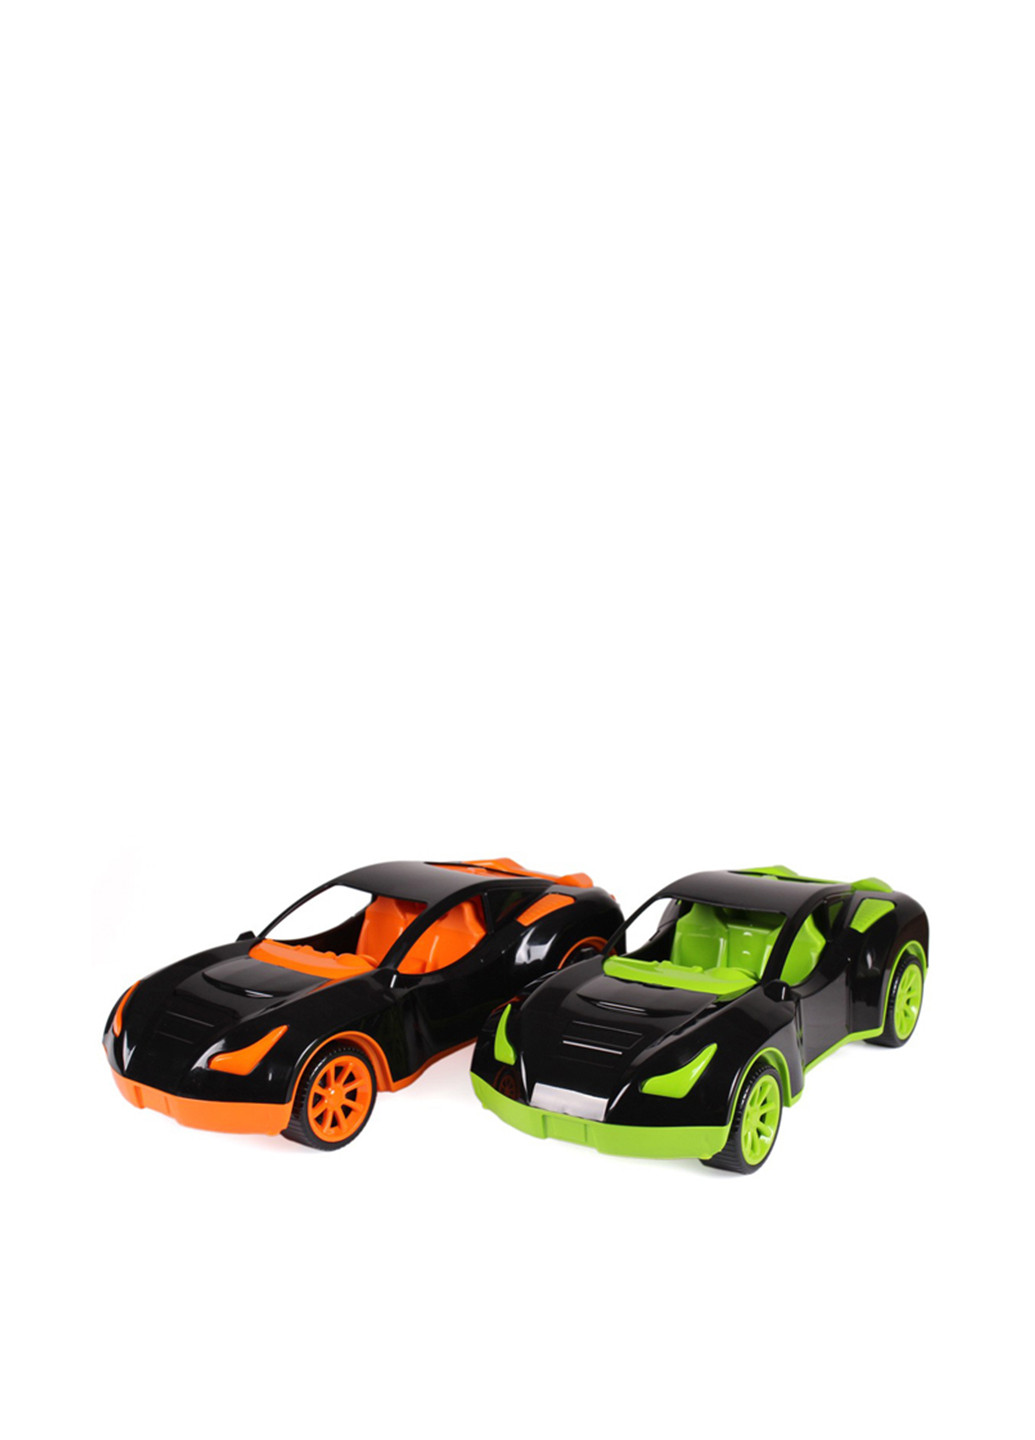 Іграшка Автомобіль 38х16.5х12 см, в асортименті ТехноК (251885837)